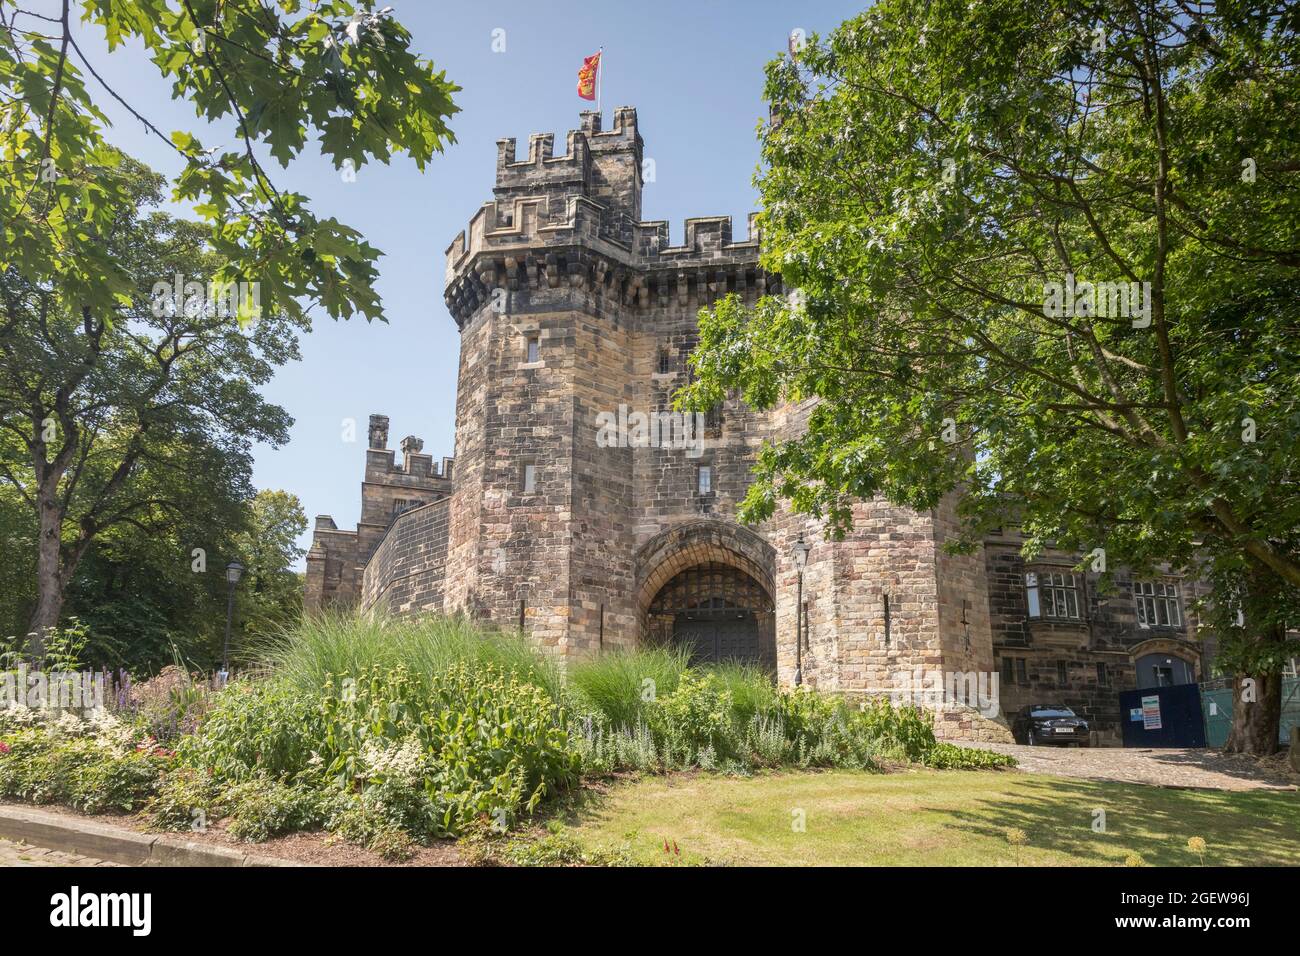 12 juillet 2019 : Lancaster, Royaume-Uni - Château de Lancaster, l'entrée principale entourée de son jardin. C'était la prison la plus longue en service en Grande-Bretagne jusqu'à sa fermeture Banque D'Images